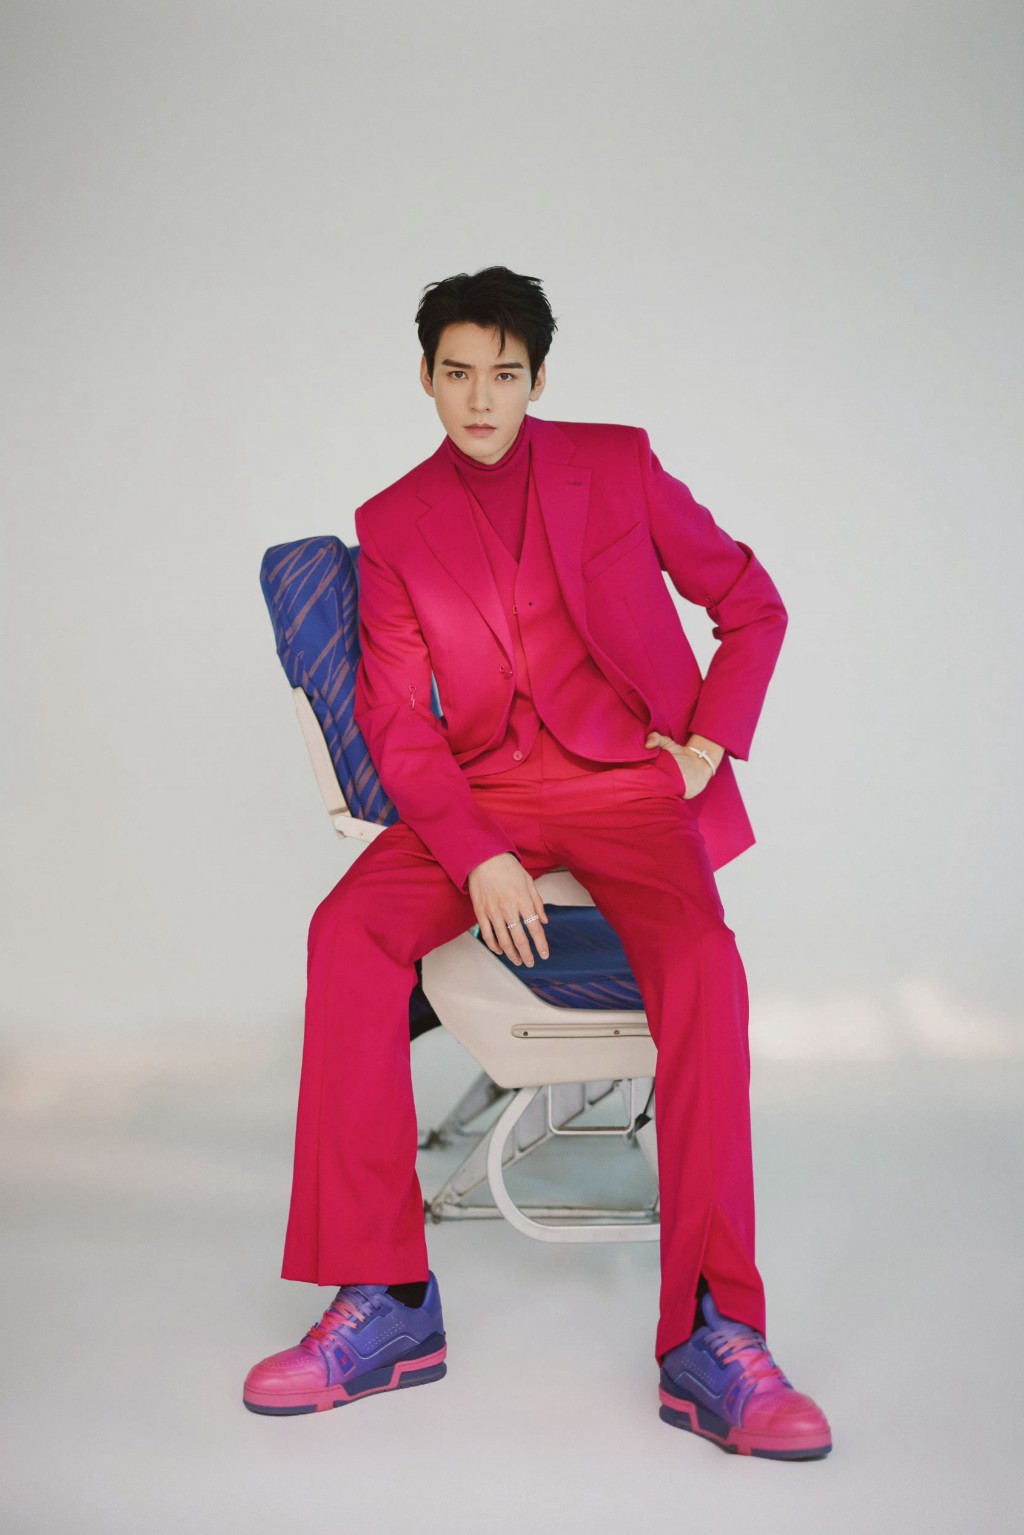 龚俊先生之夜玫粉色西装造型俊朗有型格调写真图片